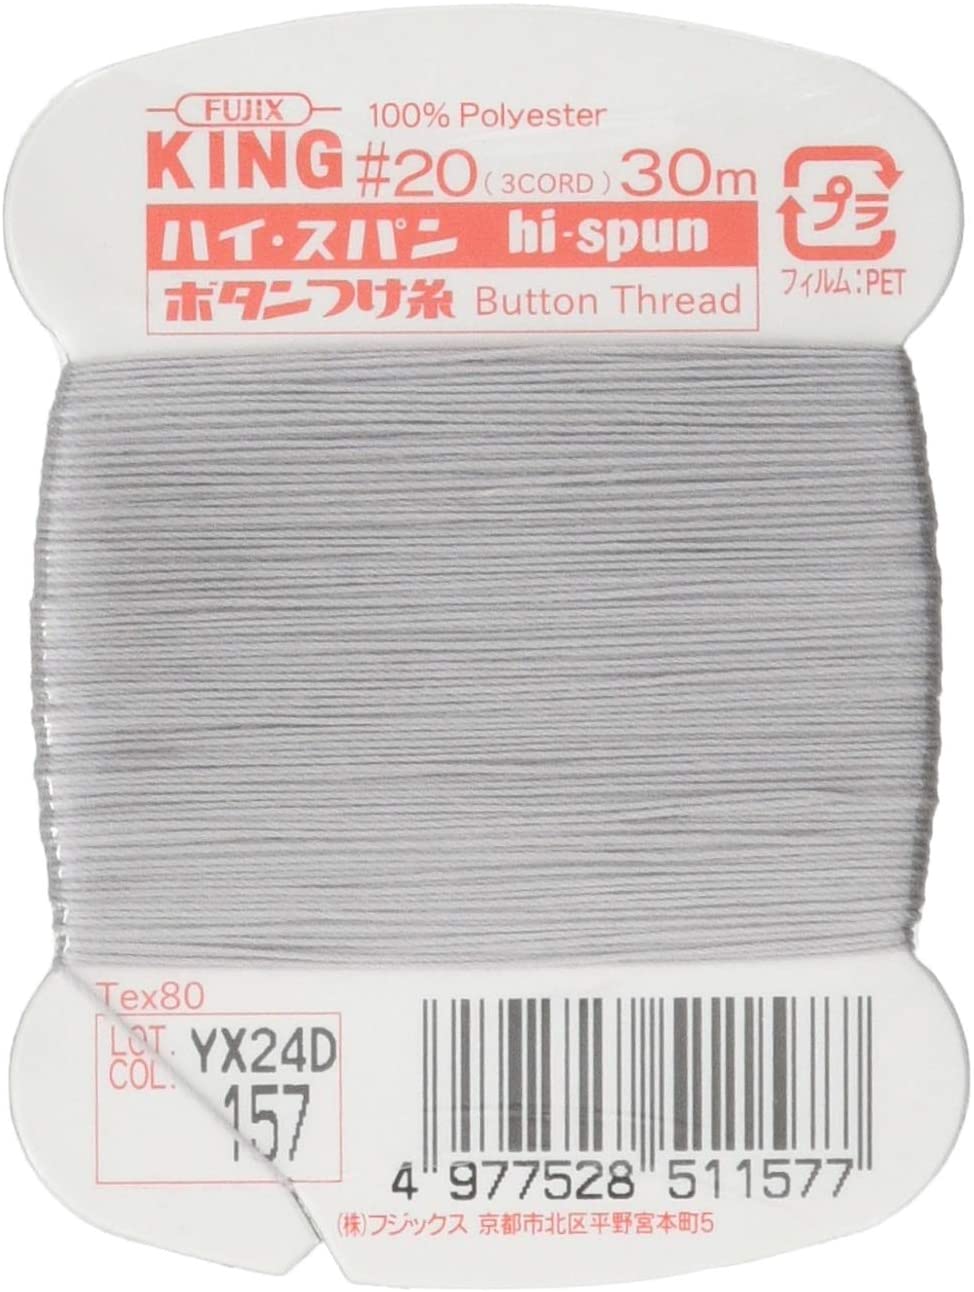 FK51-157 ハイスパンボタンつけ糸 #20 30m巻 (枚)